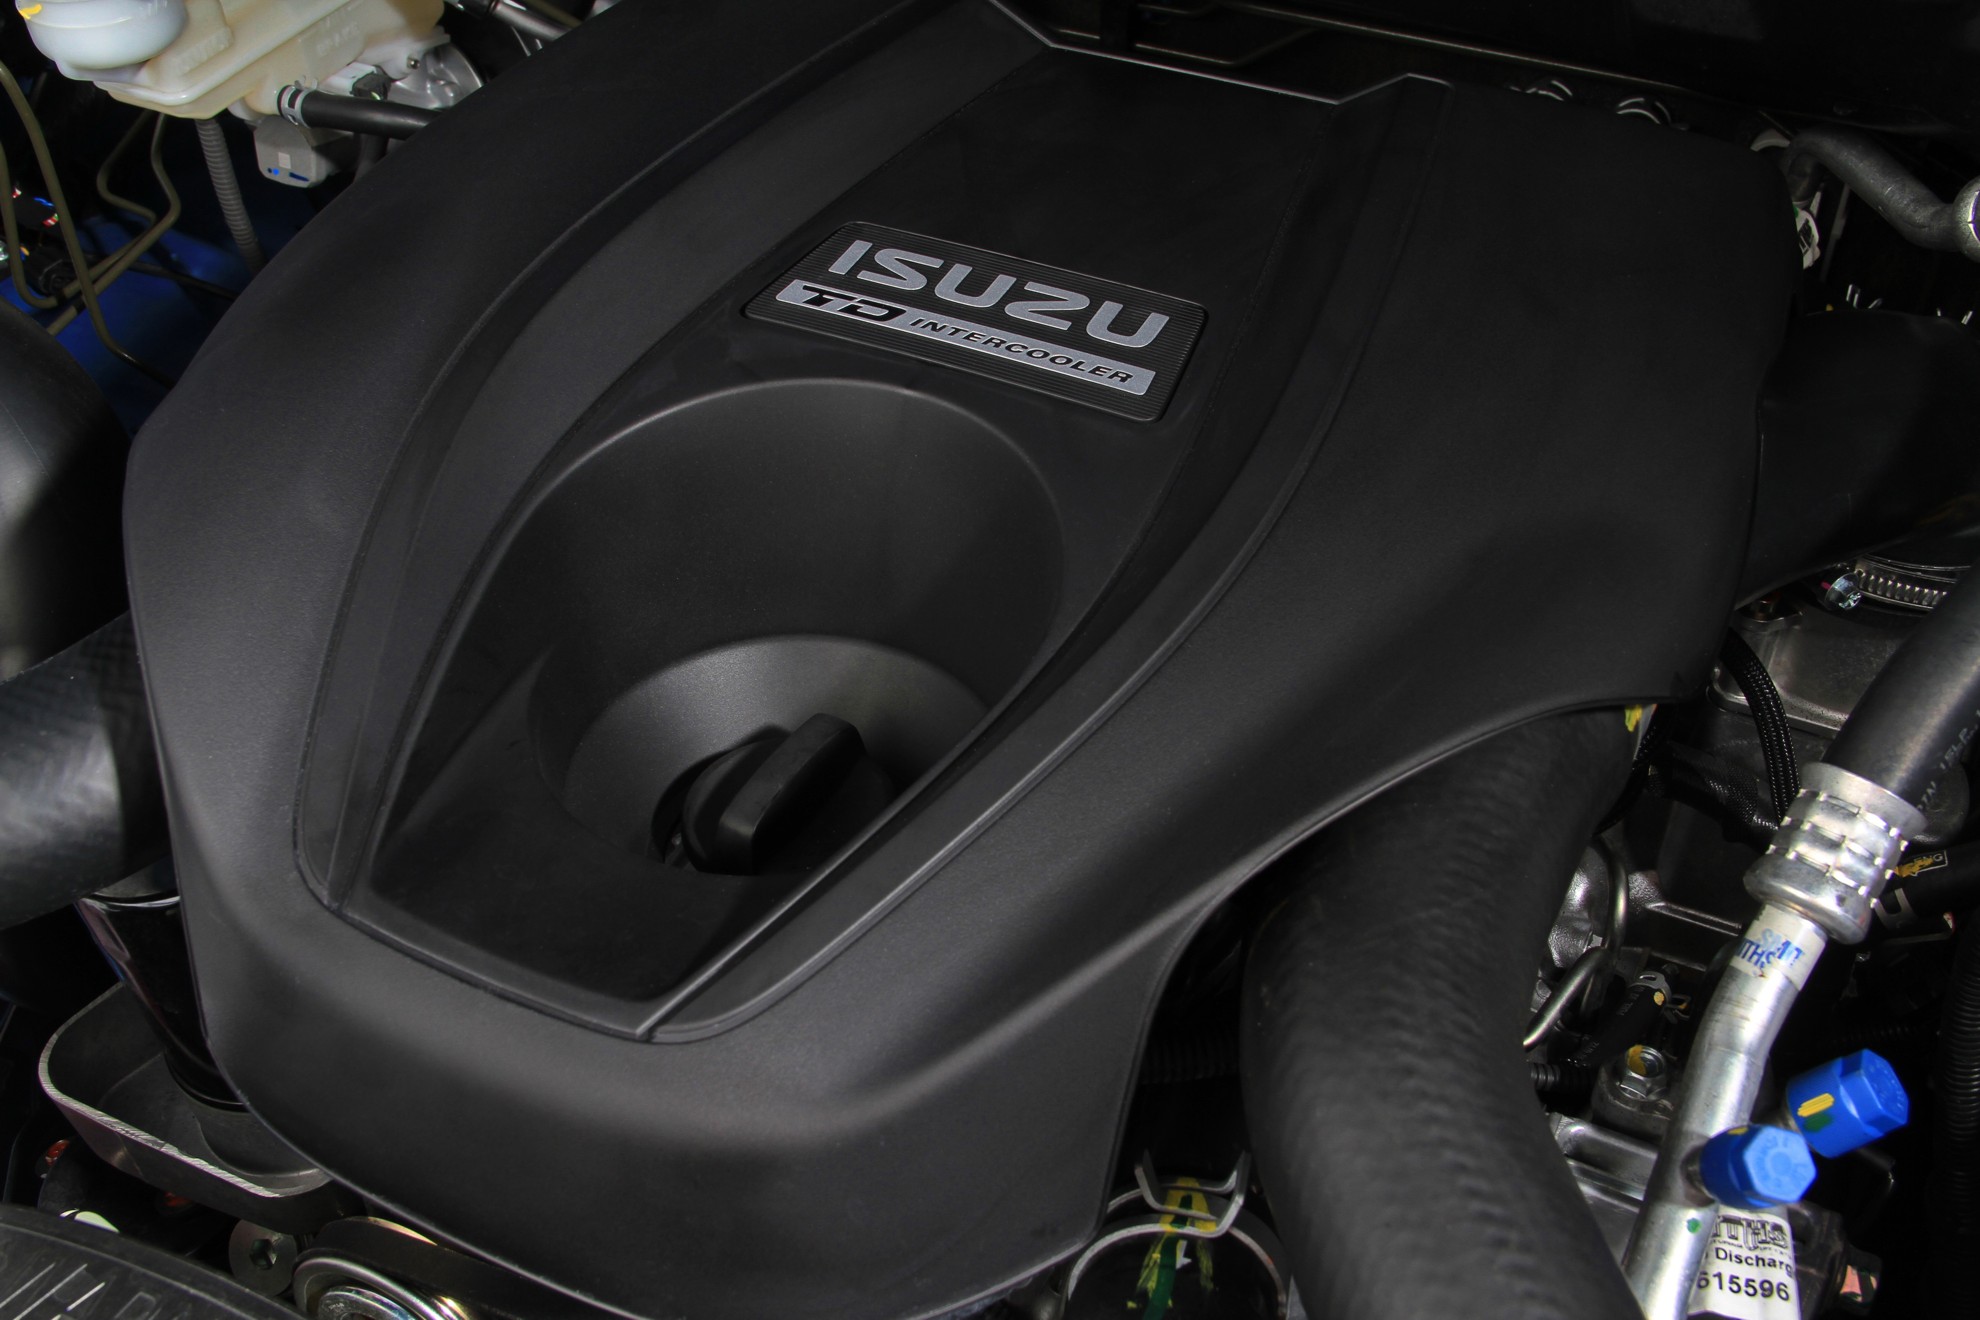 Isuzu – A Global Leader In Diesel Engine Technology